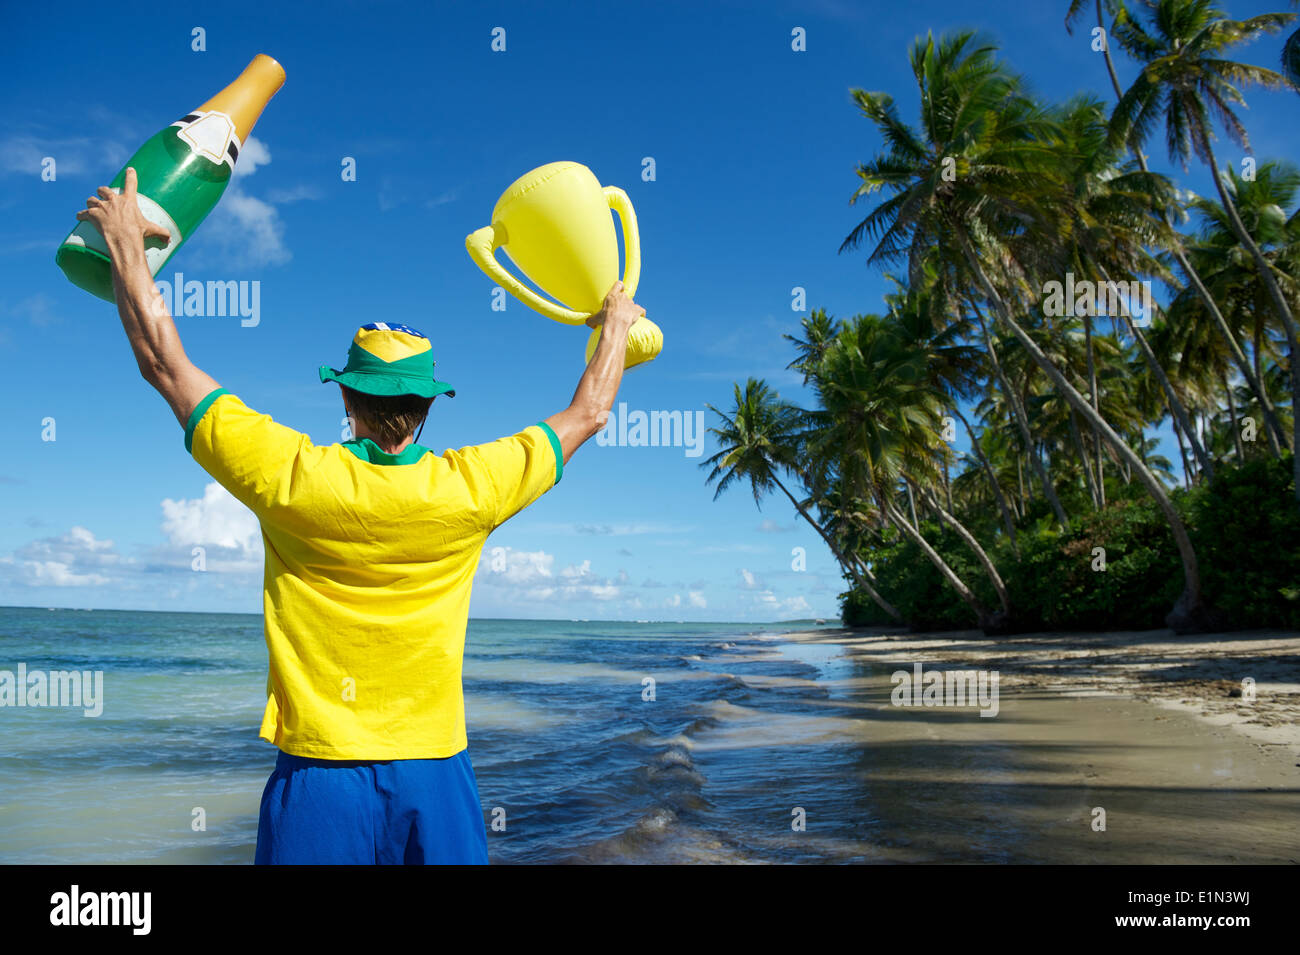 Joueur de football brésilien, l'équipe de couleurs Brésil holding trophy et la célébration de Champagne sur la plage, dans le Nordeste Bahia Banque D'Images